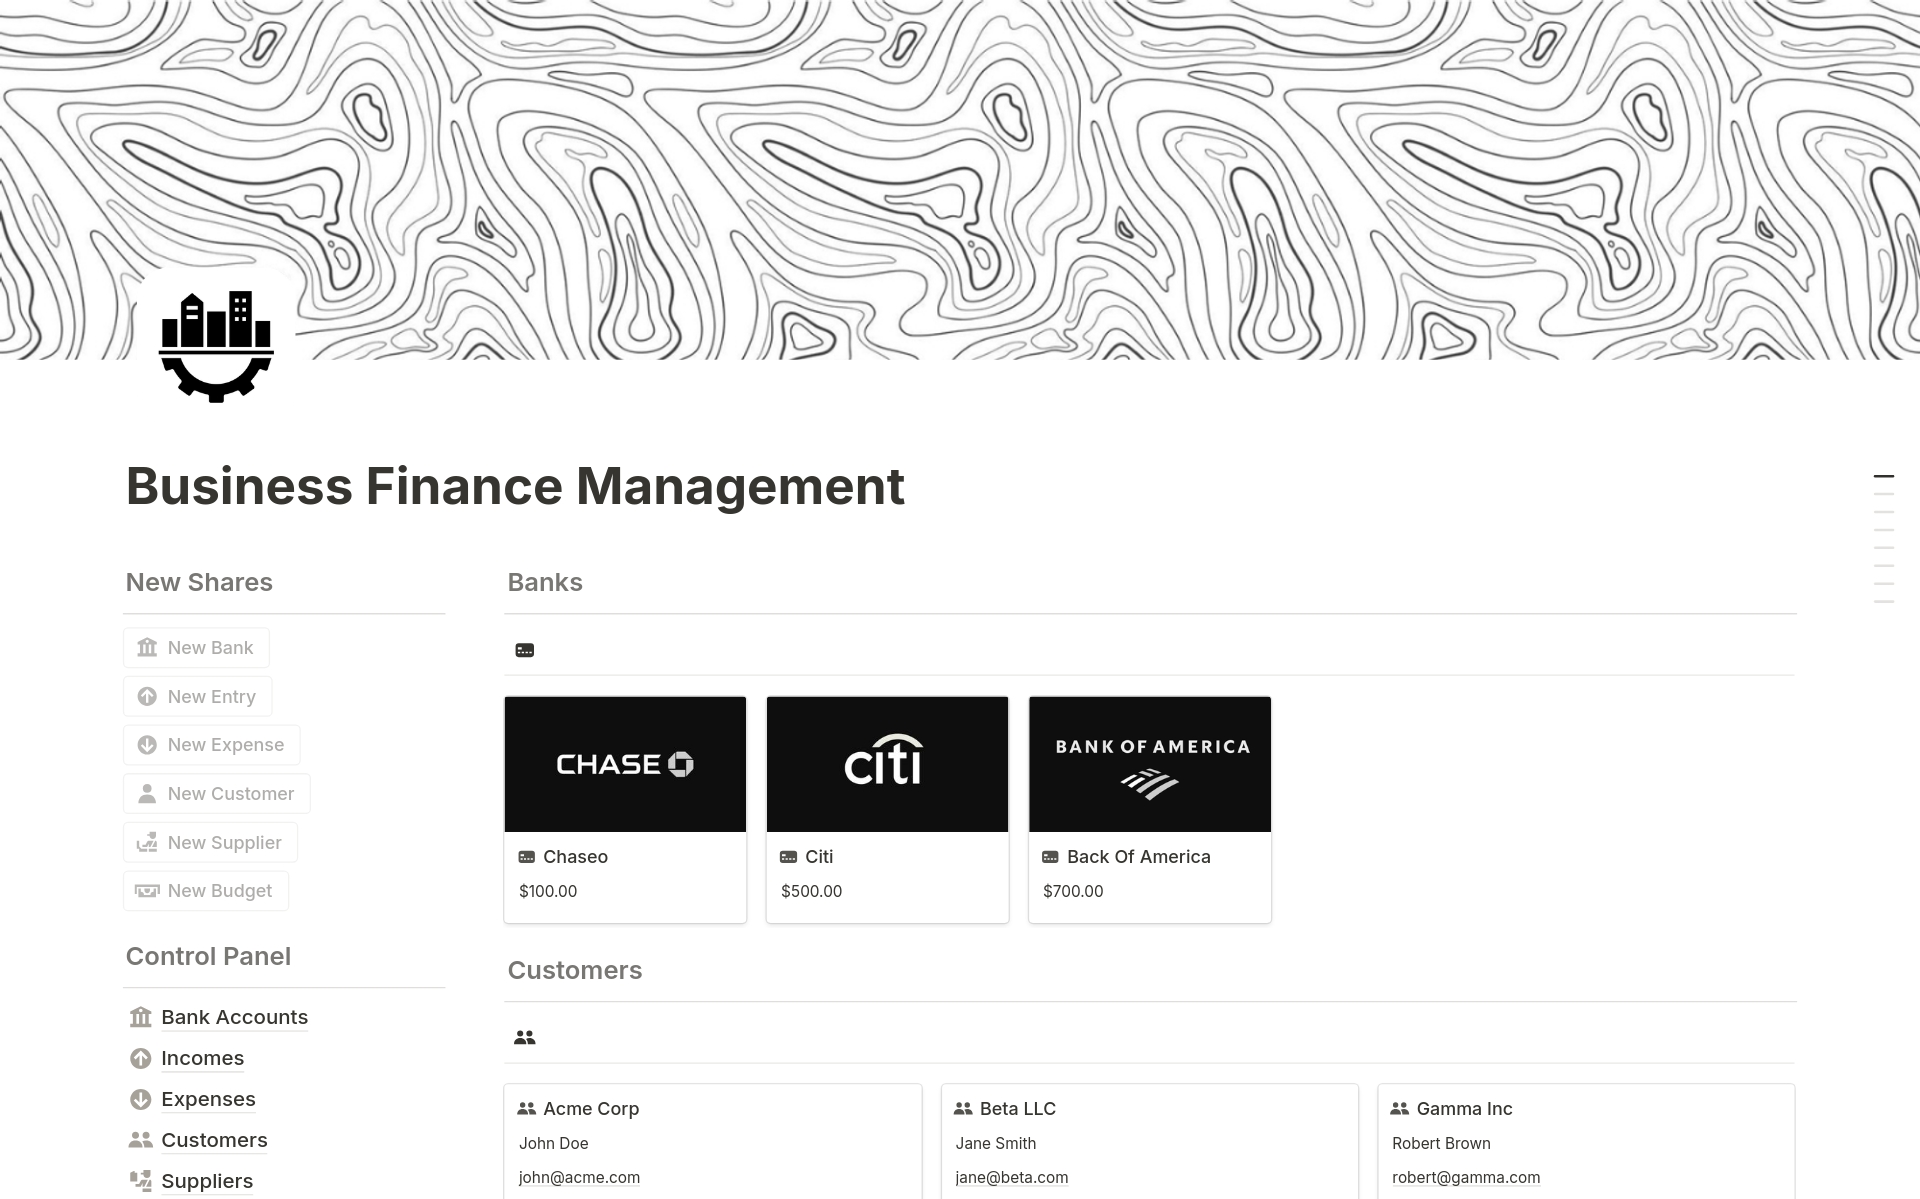 Vista previa de una plantilla para Business Finance Management